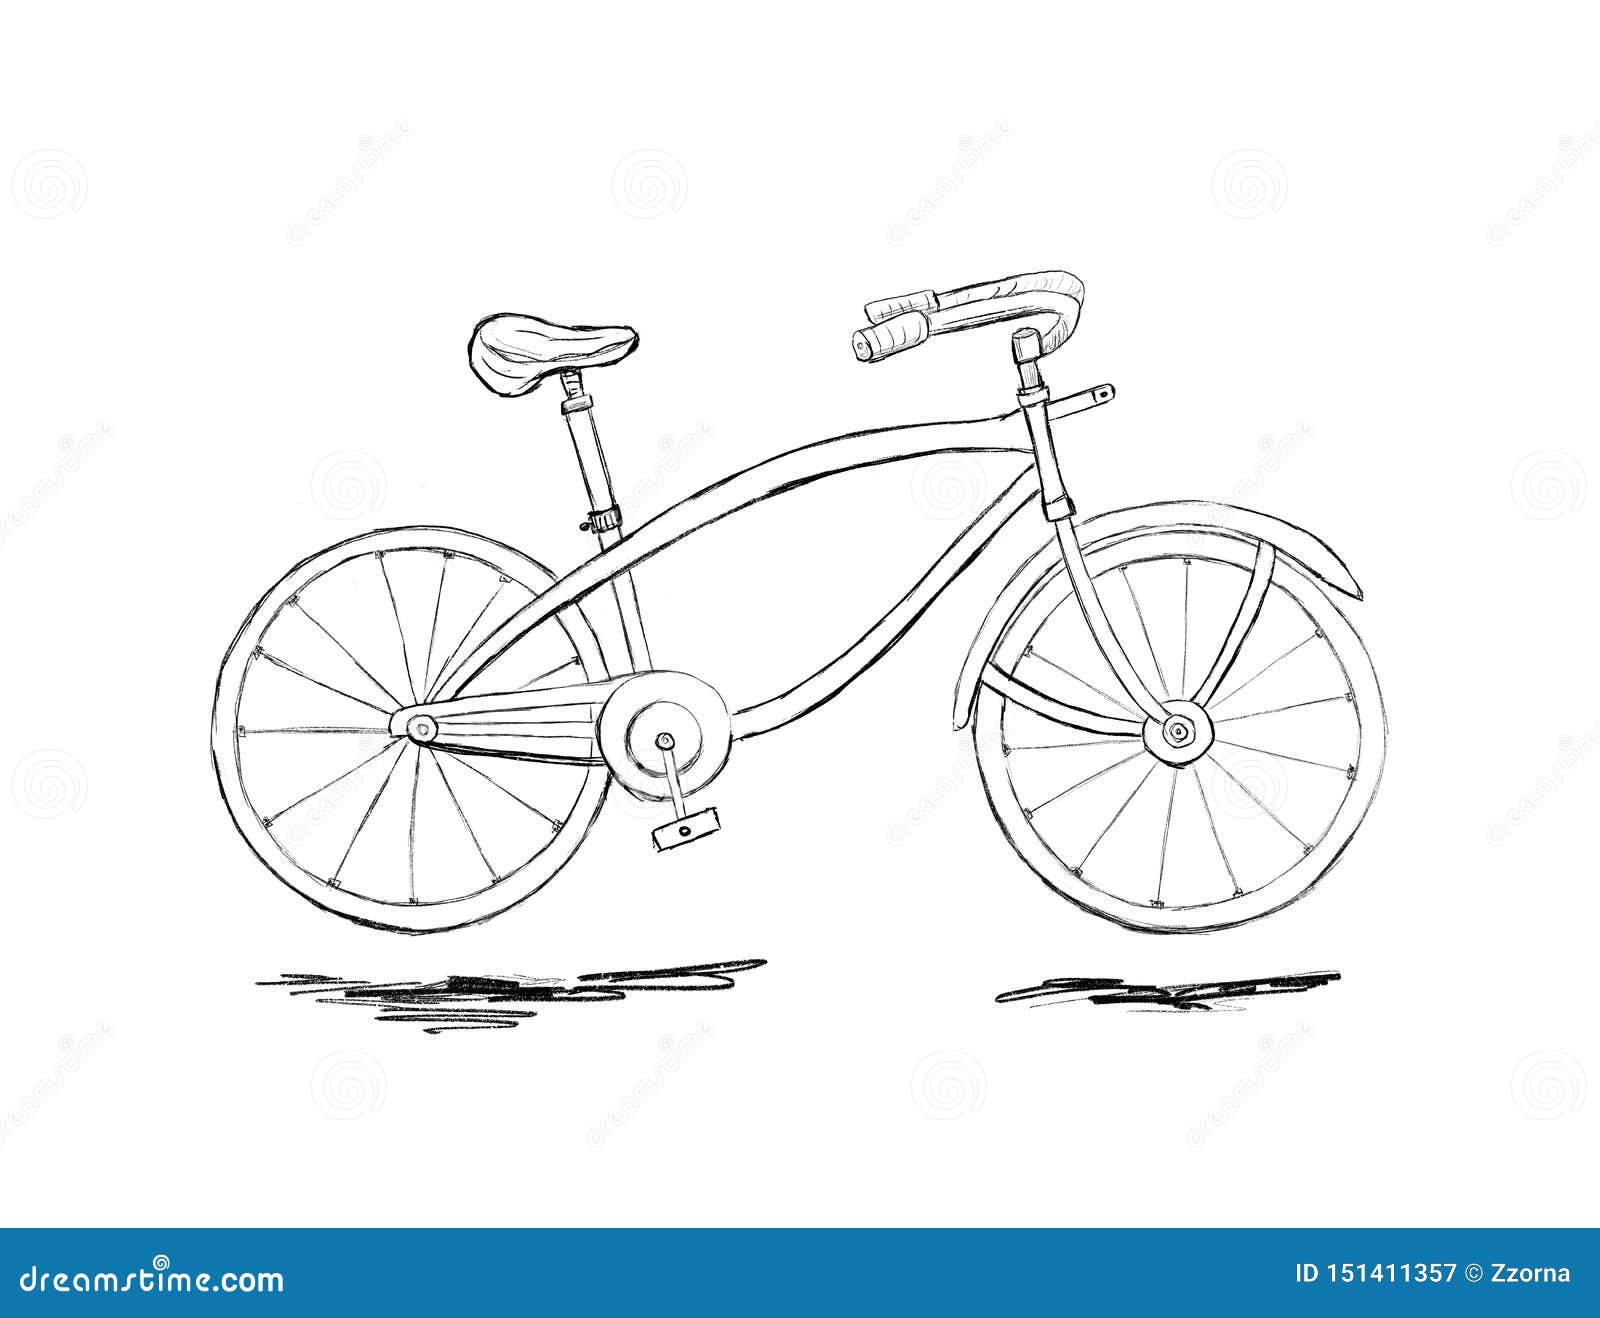 Городской велосипед рисунок карандашом